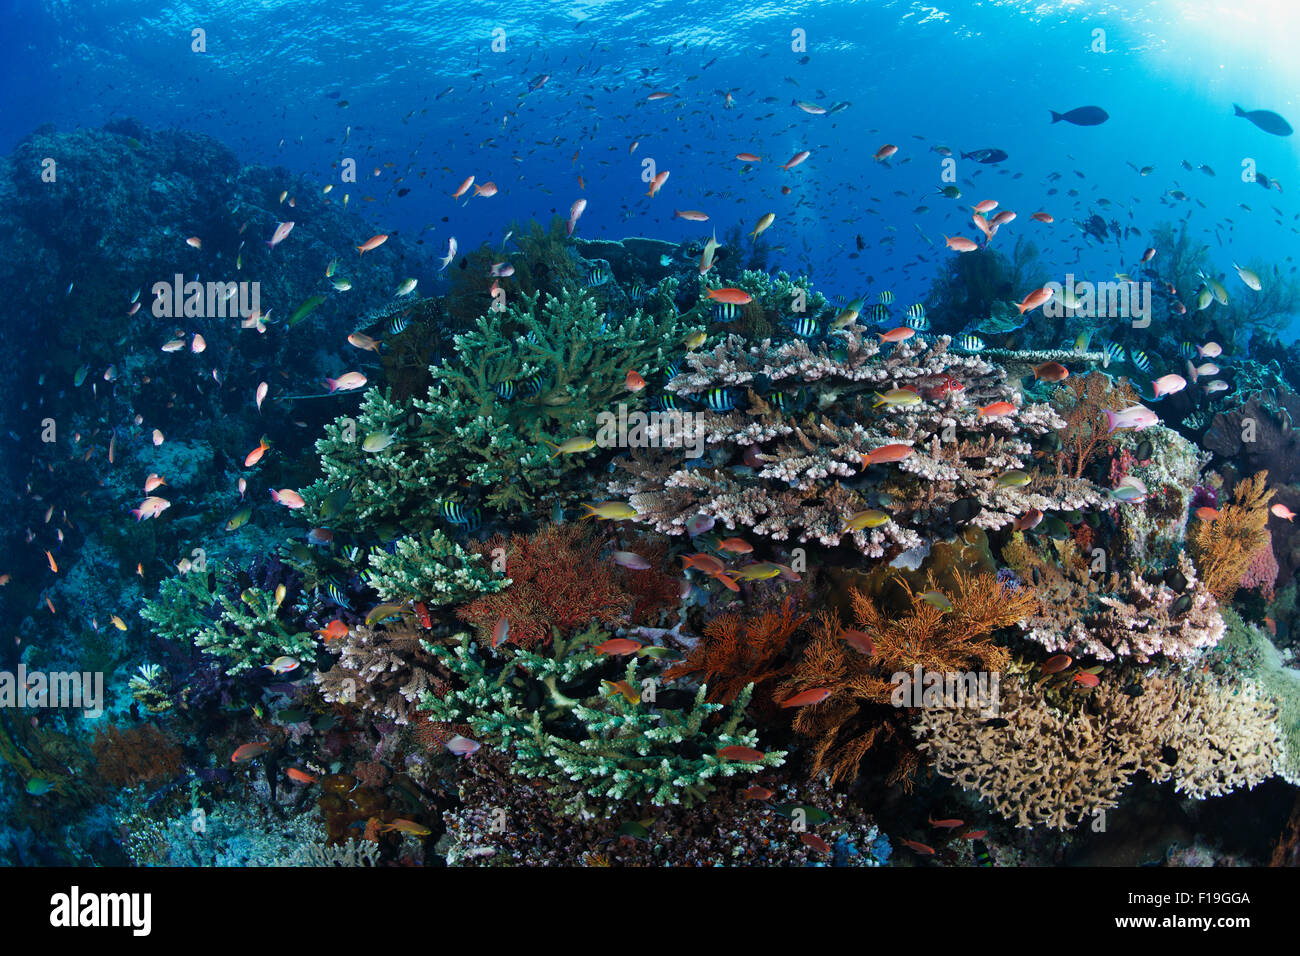 Px0660-D. La santé des récifs de corail dans toute sa splendeur, avec de nombreuses espèces de coraux et de poissons marins. L'Indonésie, de l'océan Pacifique tropical Banque D'Images